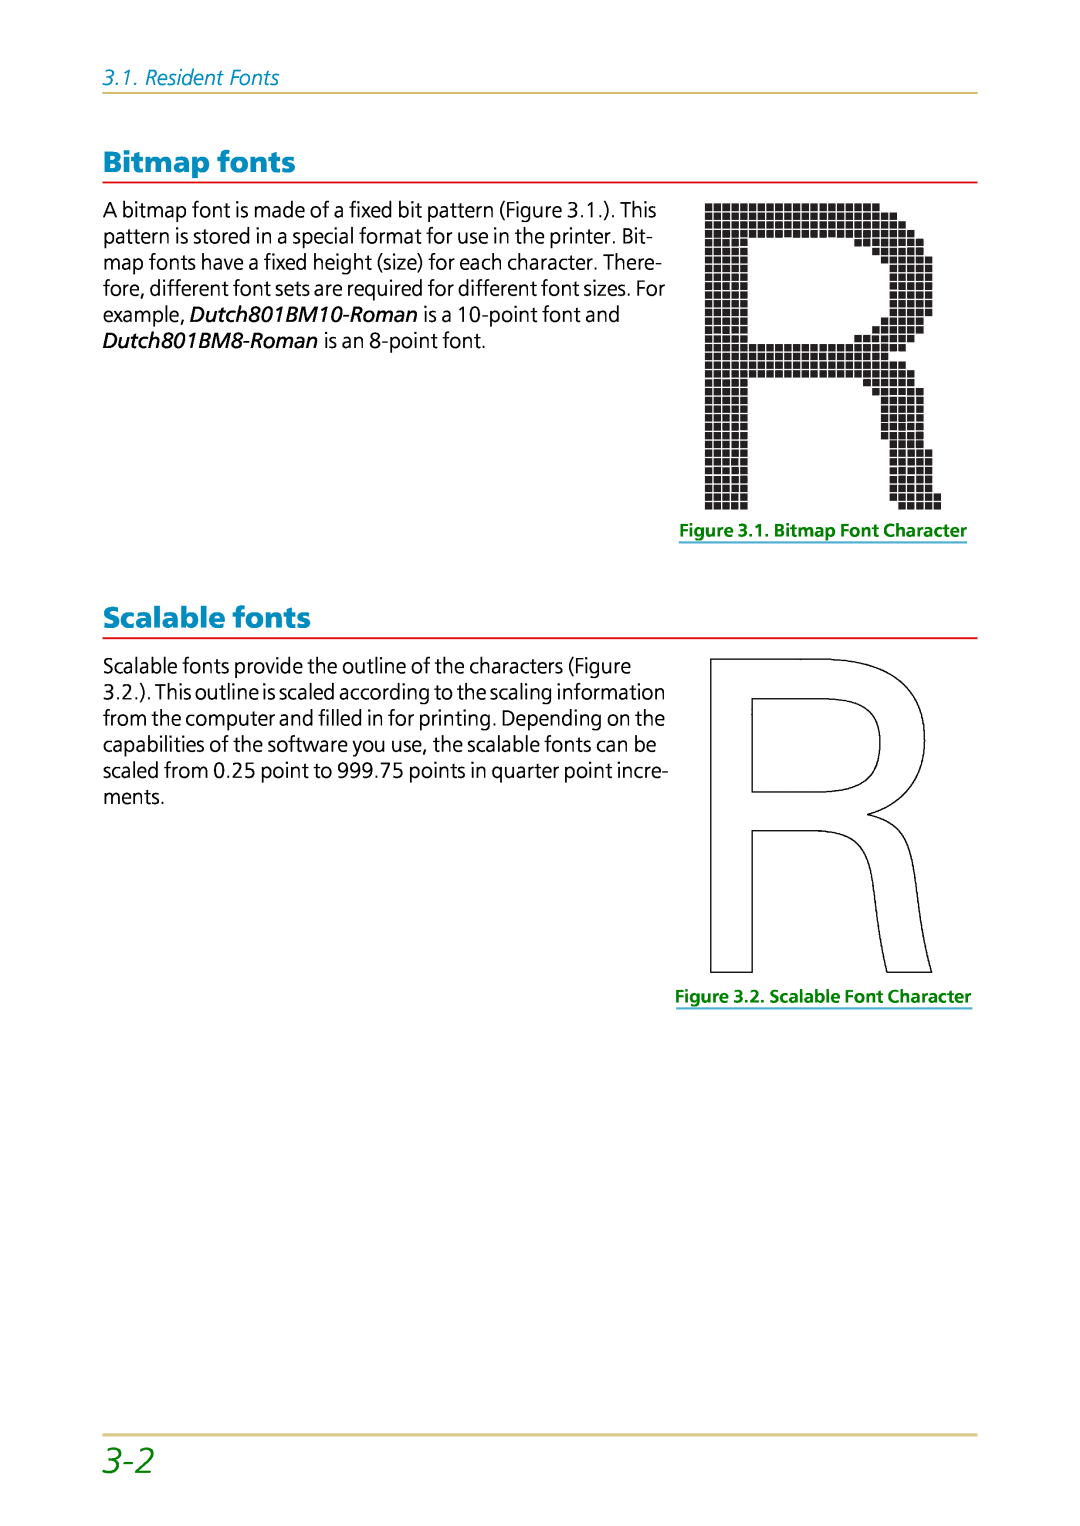 Kyocera FS-1700 Bitmap fonts, Scalable fonts, Resident Fonts, 1. Bitmap Font Character, 2. Scalable Font Character 